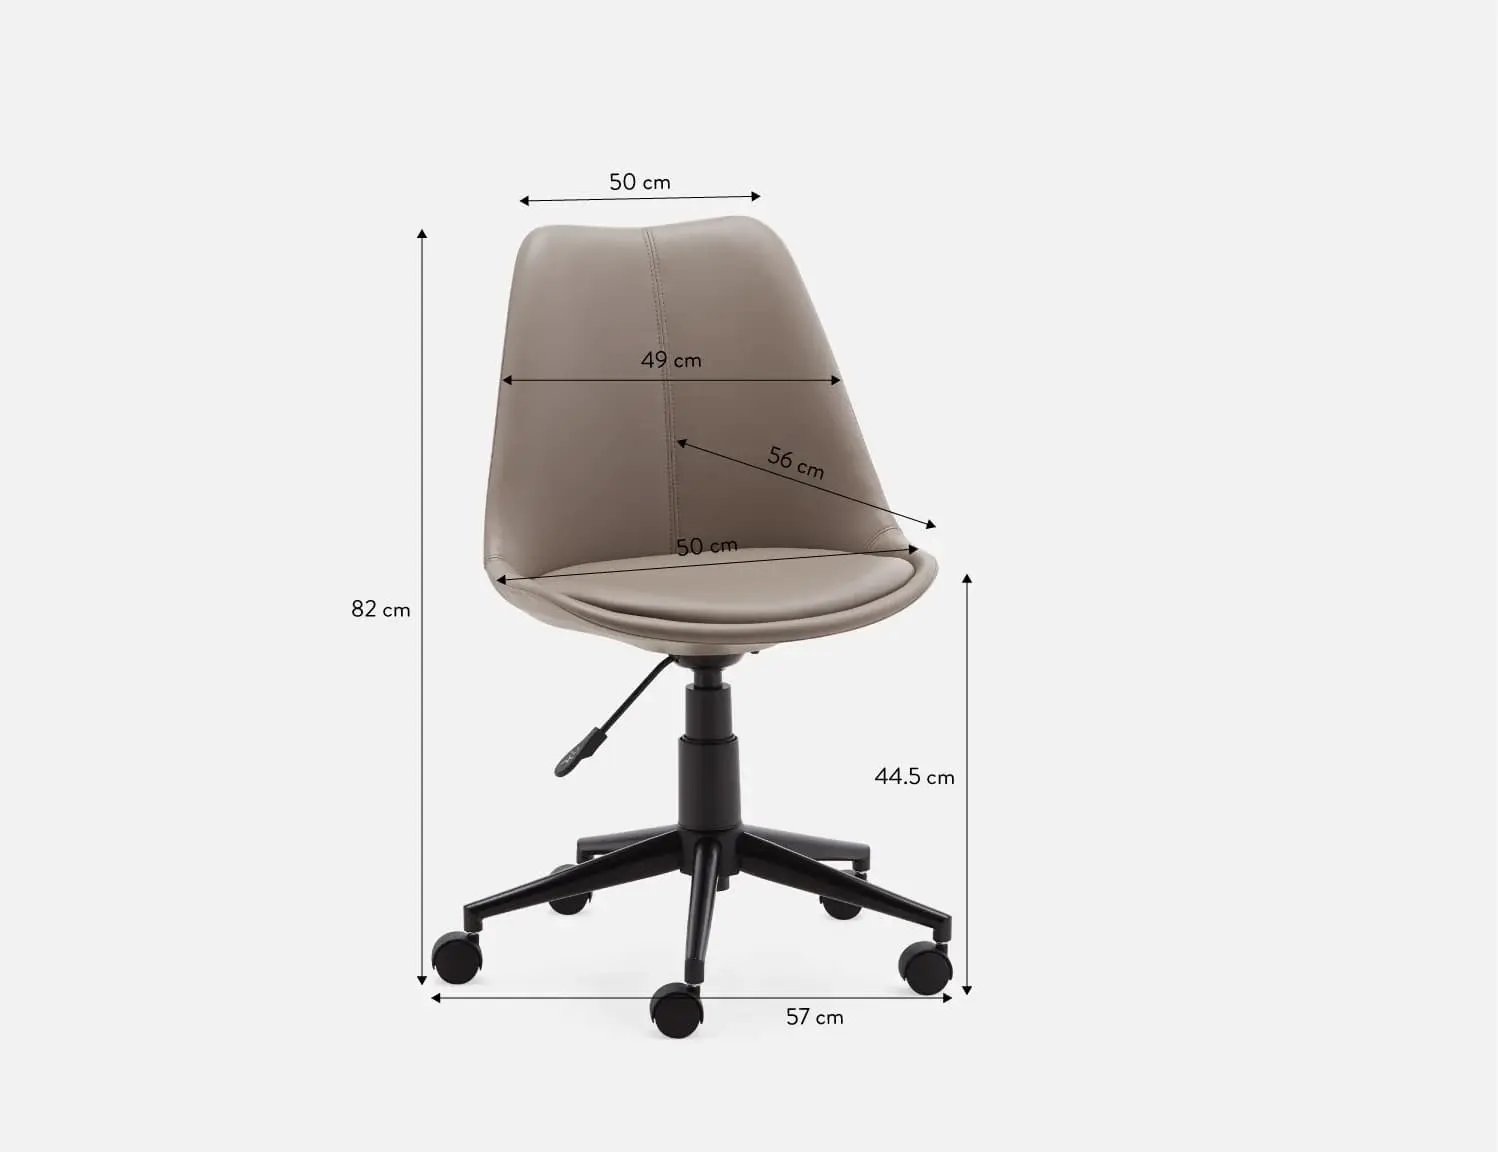 Lựa chọn kích thước ghế văn phòng phù hợp với diện tích văn phòng